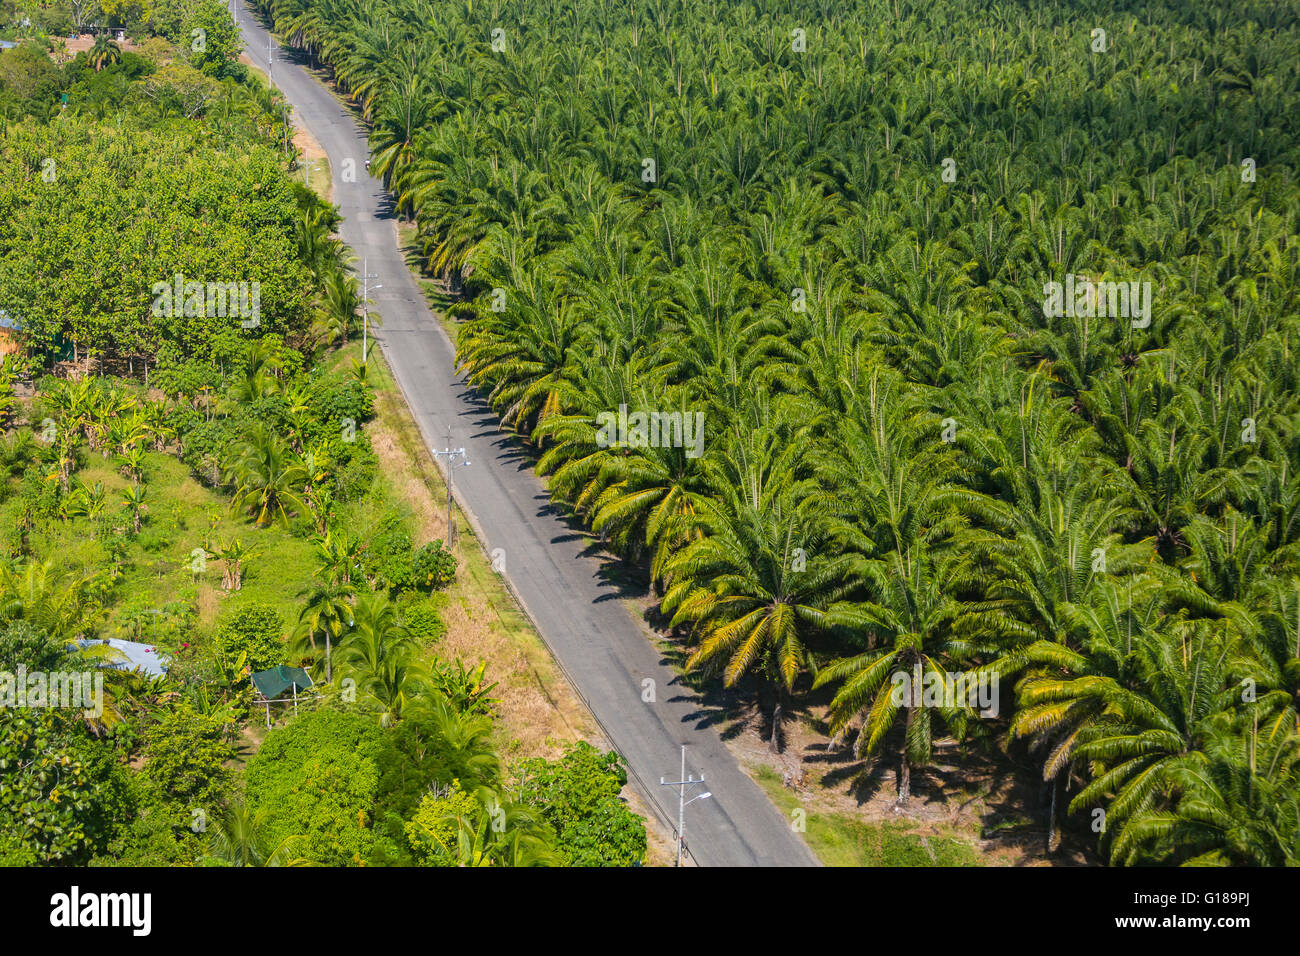 PALMAR SUR, COSTA RICA - Vue aérienne de plantation de palmiers à huile, et de la route, dans la province de Puntarenas Banque D'Images